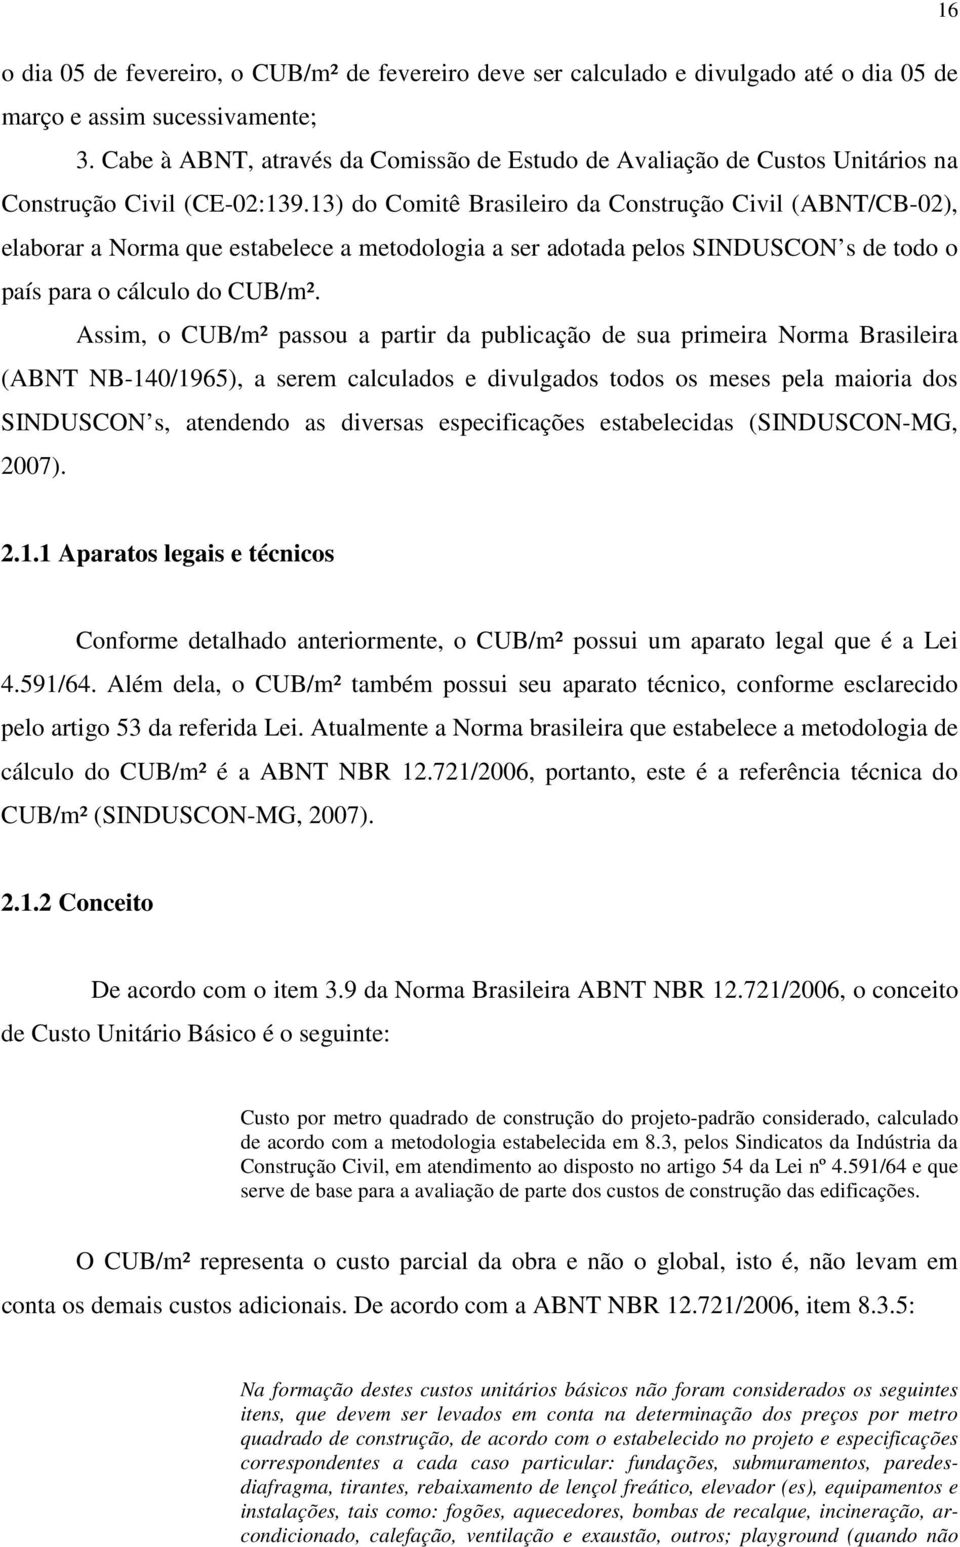 13) do Comitê Brasileiro da Construção Civil (ABNT/CB-02), elaborar a Norma que estabelece a metodologia a ser adotada pelos SINDUSCON s de todo o país para o cálculo do CUB/m².